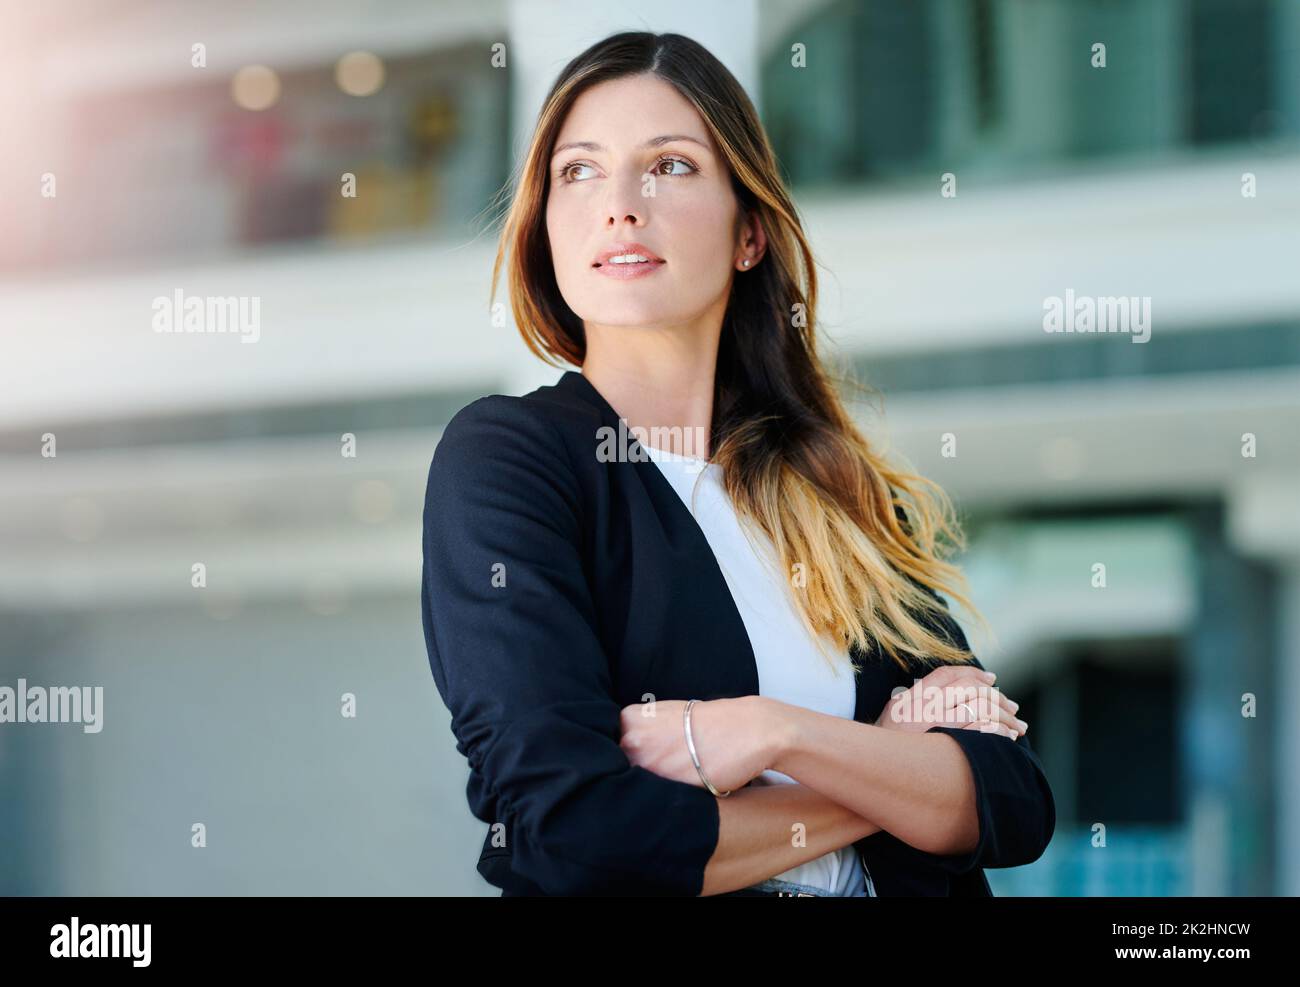 Elle a beaucoup de pensées à l'esprit. Photo courte d'une jeune femme d'affaires attirante et attentionnée debout, les bras croisés dans un bureau moderne. Banque D'Images